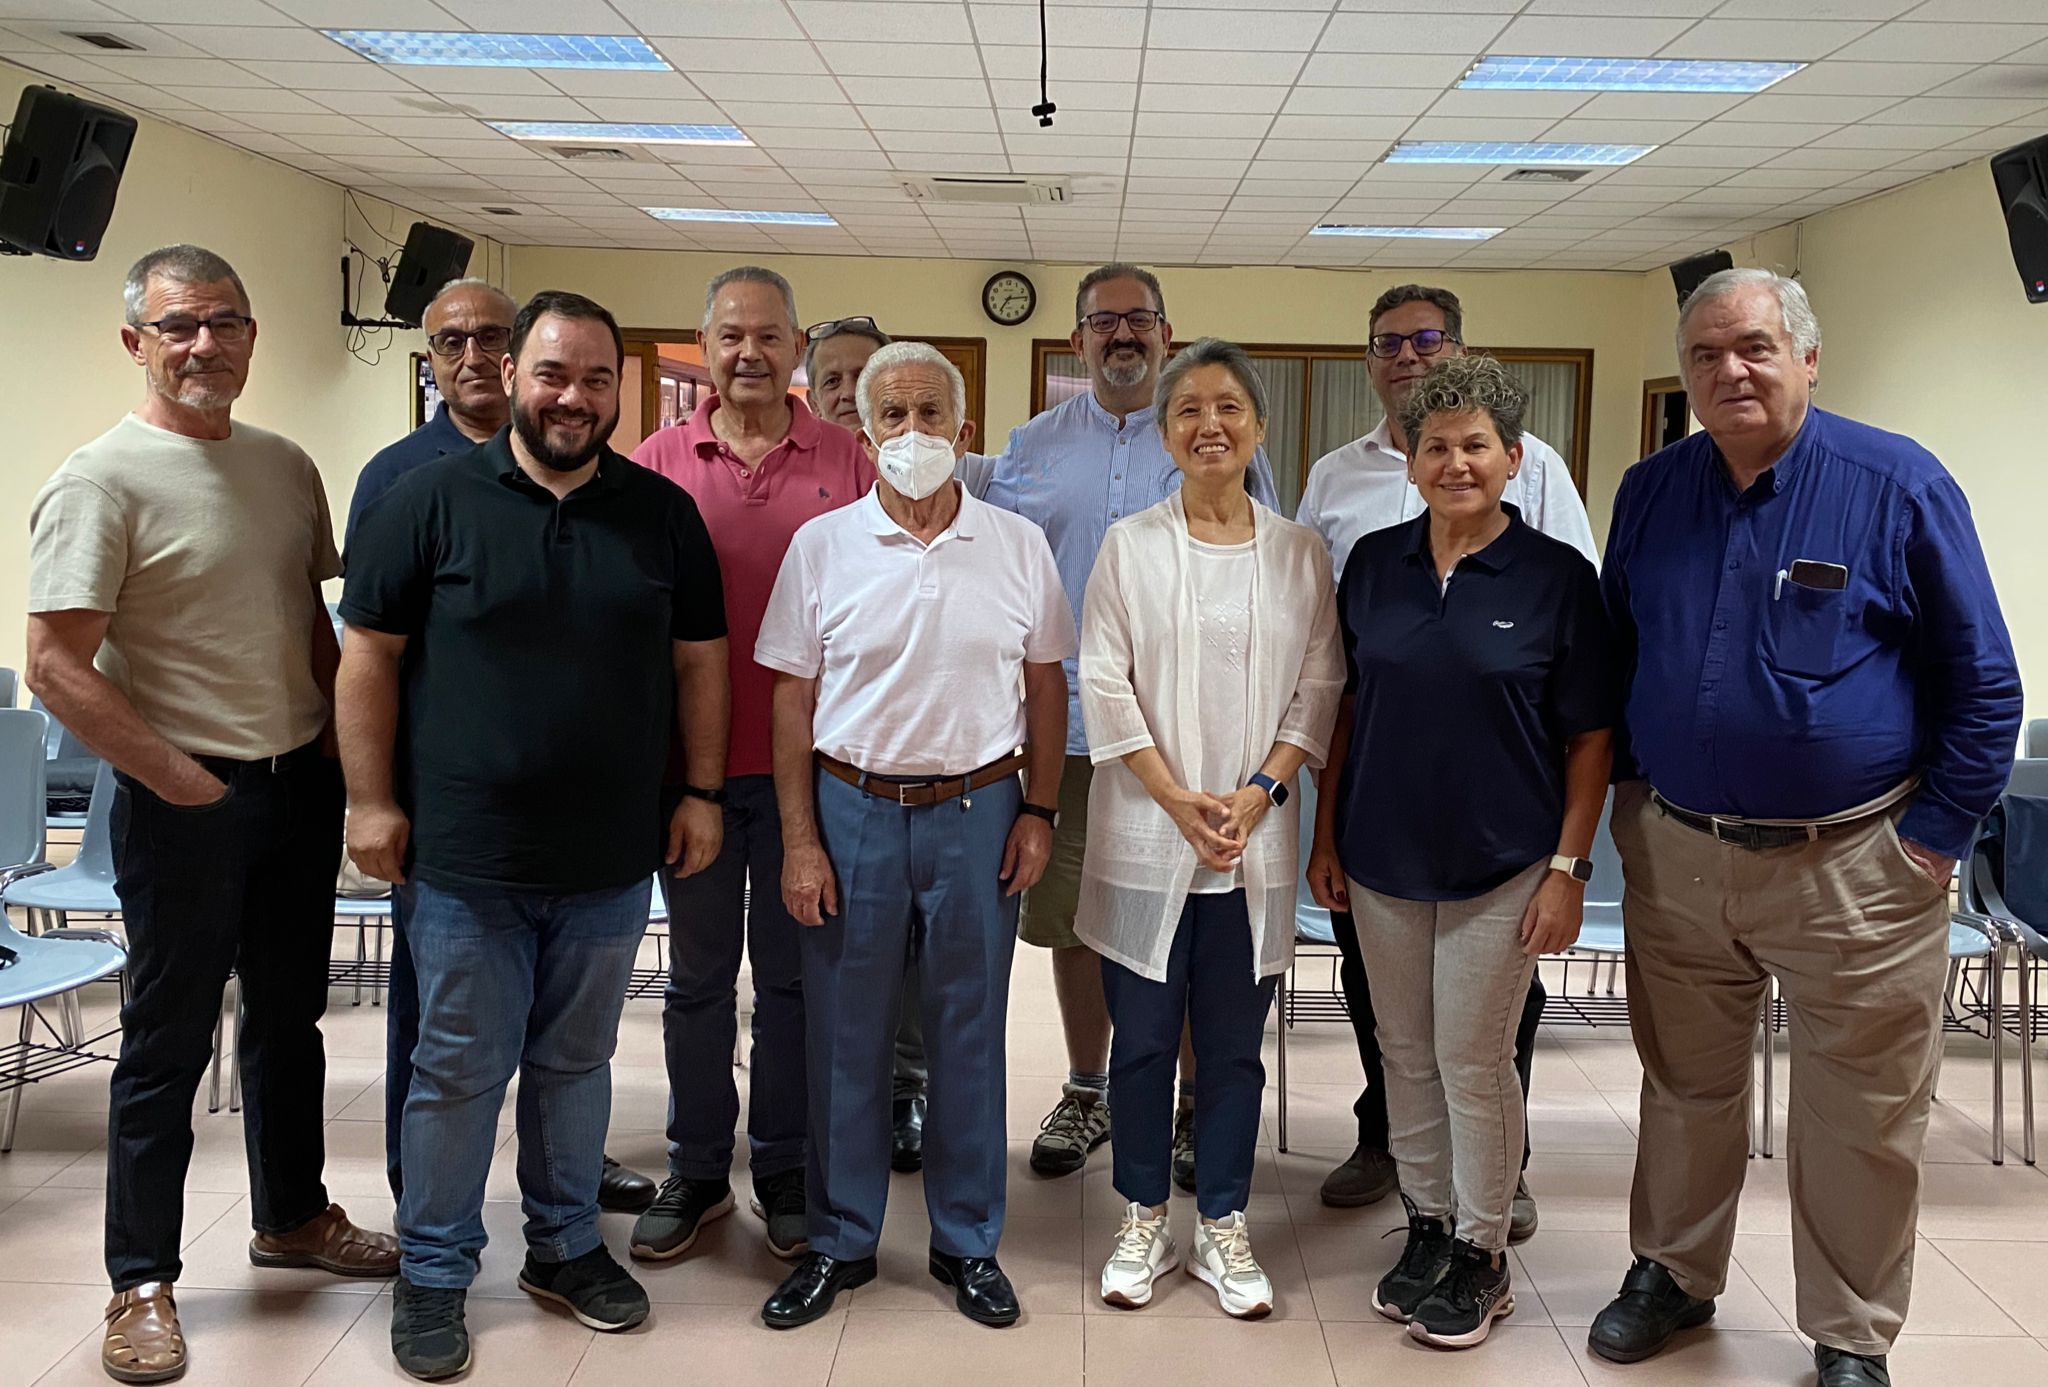 Iglesias evangélicas de Valladolid firman un “Pacto por la unidad”